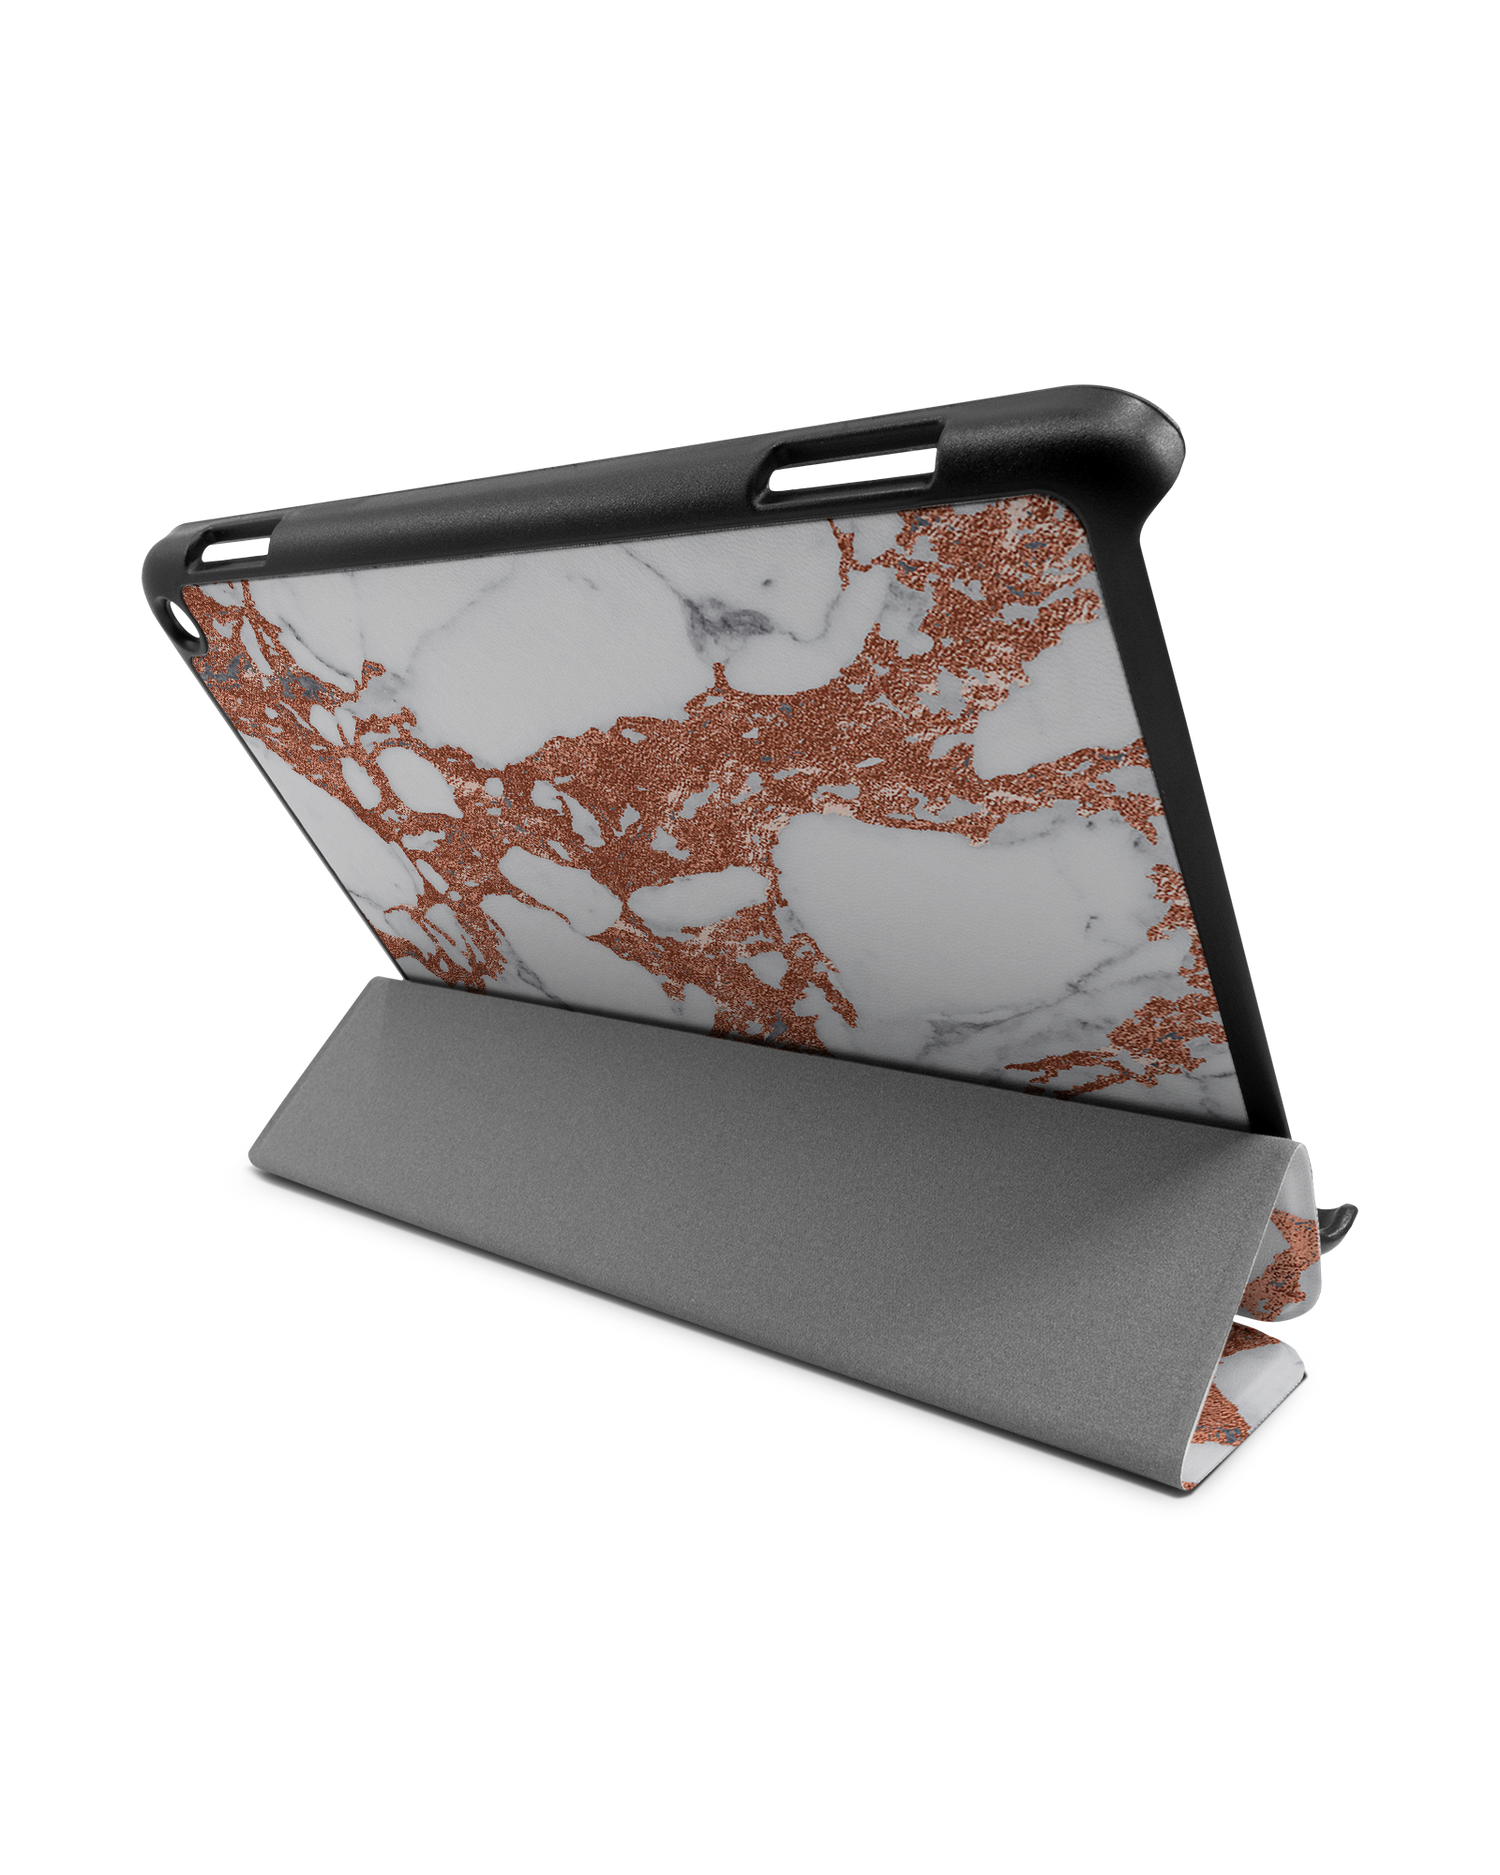 Marble Mix Tablet Smart Case für Amazon Fire HD 8 (2022), Amazon Fire HD 8 Plus (2022), Amazon Fire HD 8 (2020), Amazon Fire HD 8 Plus (2020): Aufgestellt im Querformat